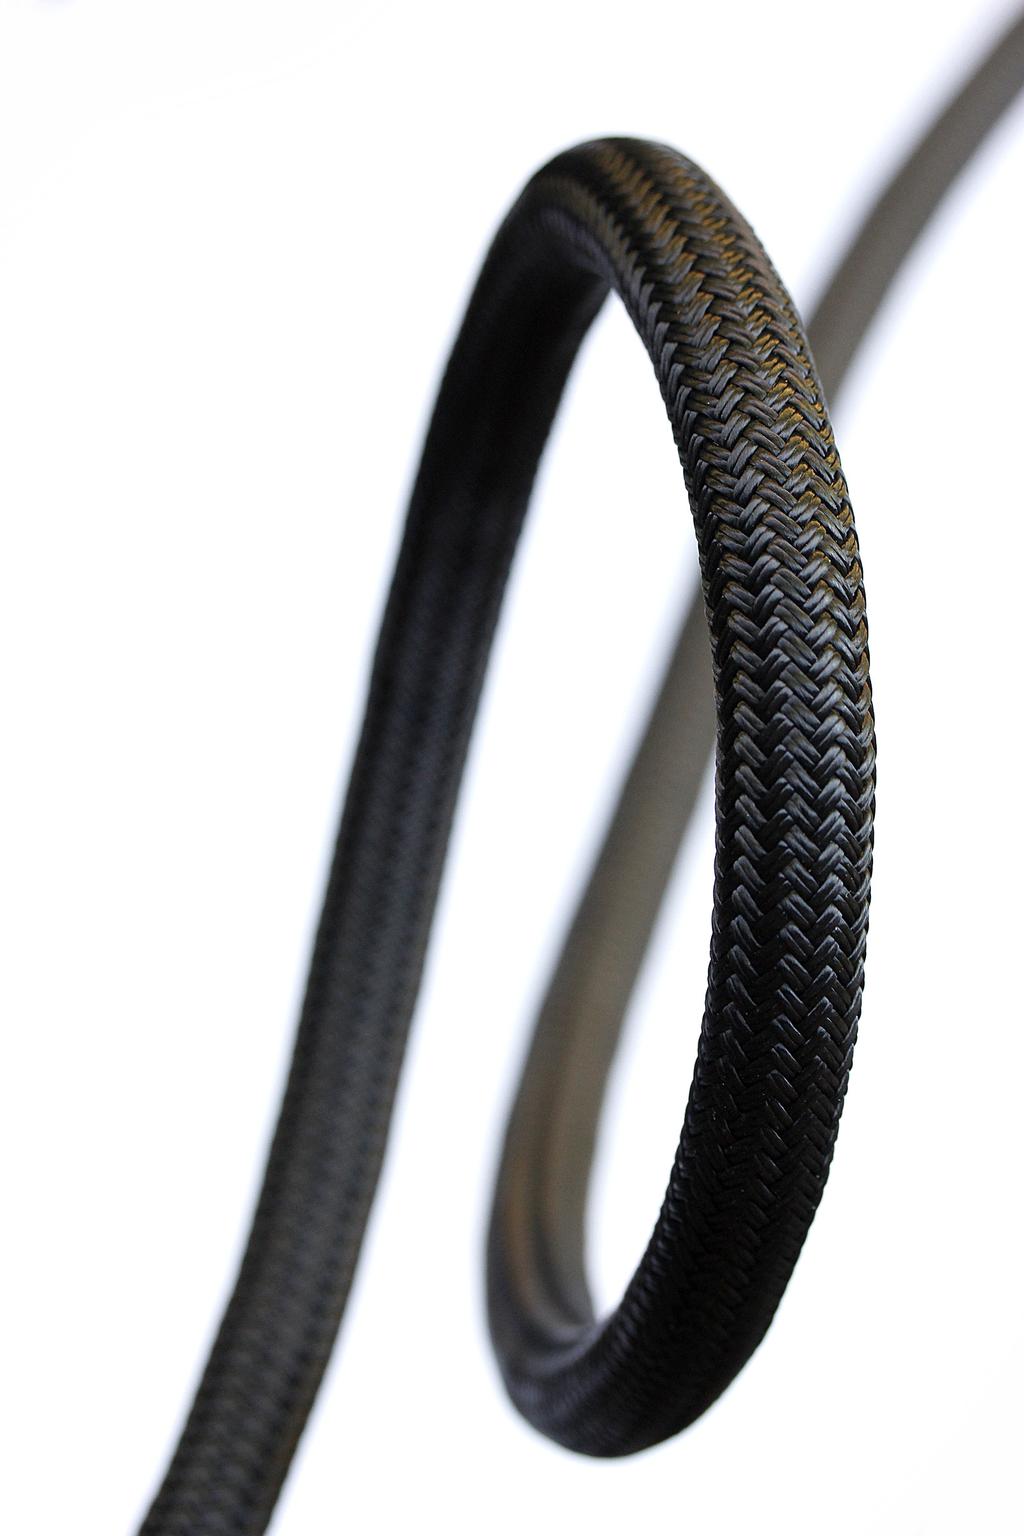 DYNEEMA lodní lana s pevností ocele Dyneema lana jsou vyrobená z technicky vyspělých vláken. Tato lana jsou při stejném průměru pevnější než lano ocelové a zároveň lehké jako pírko.